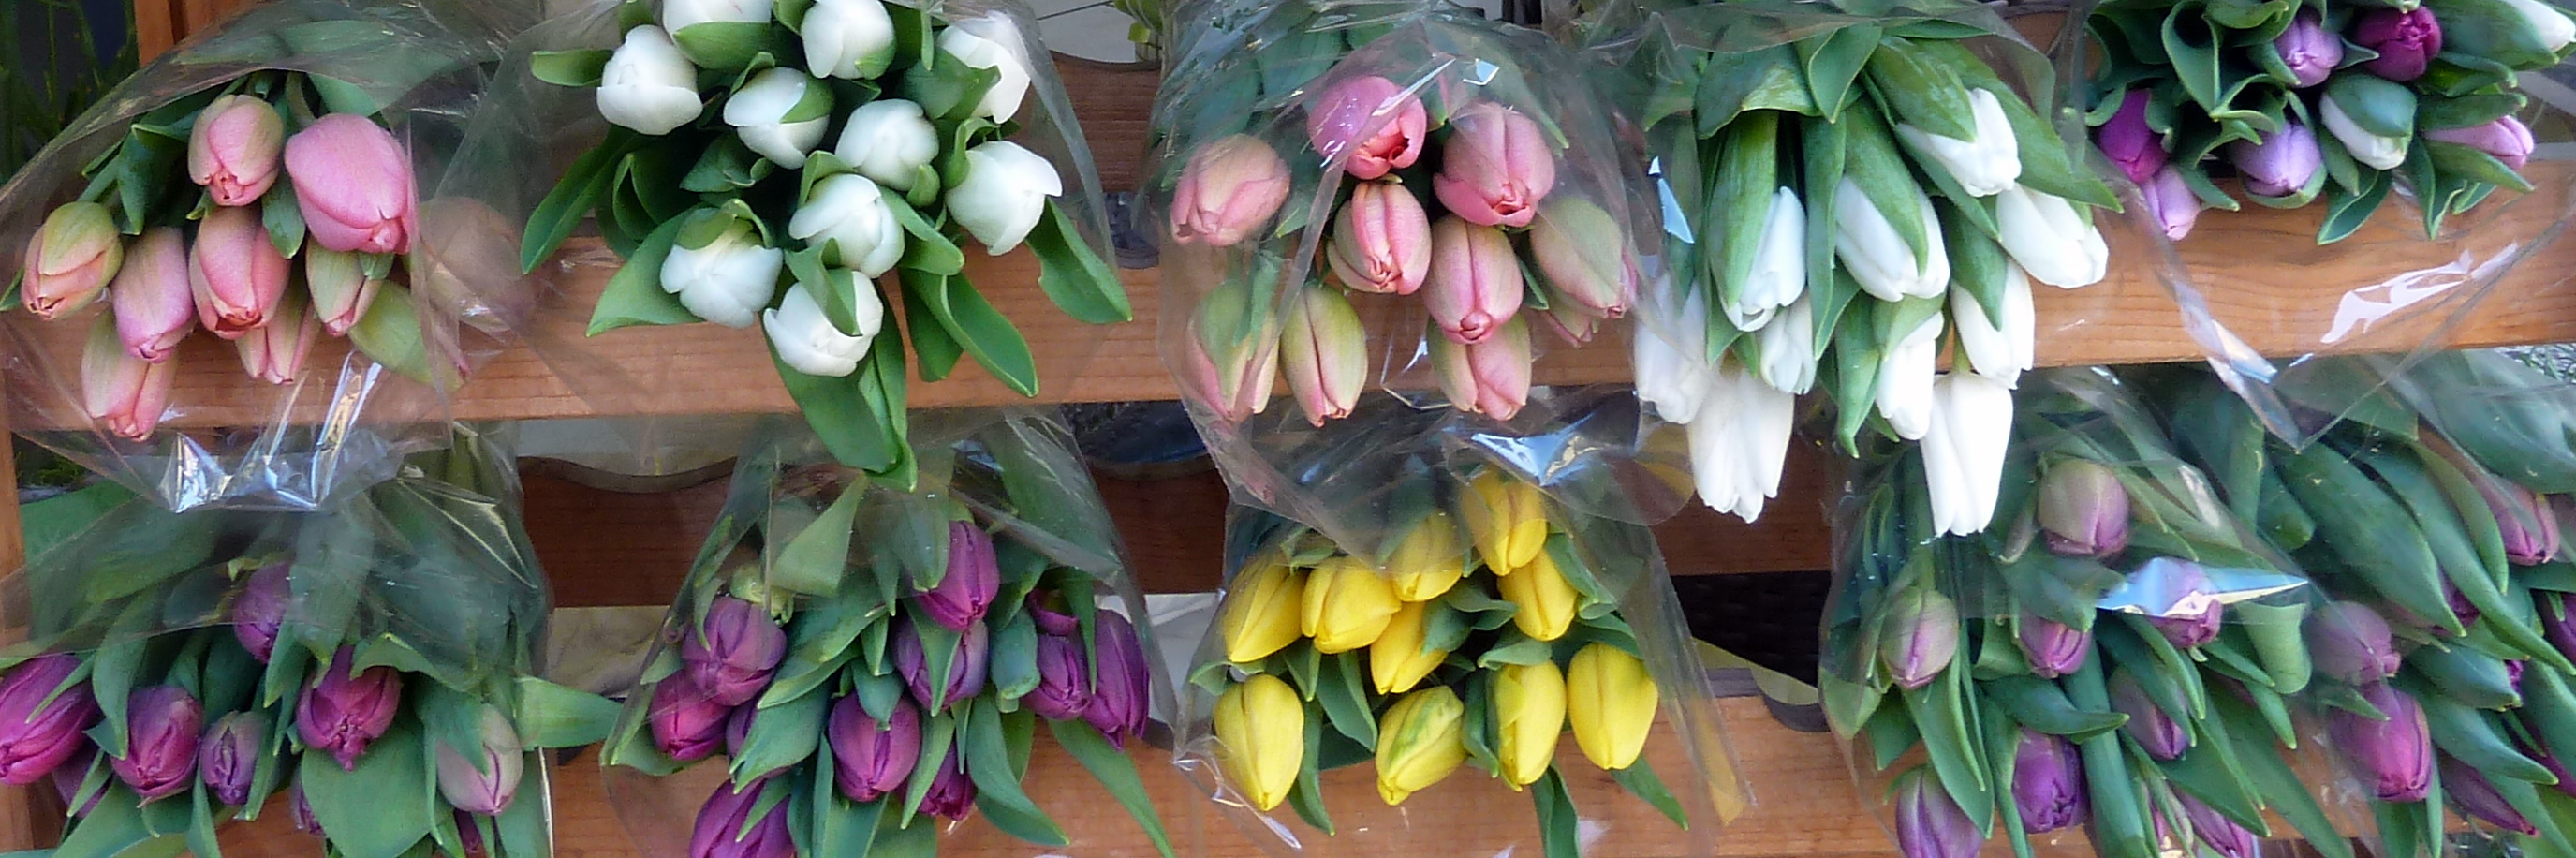 Tulpen als Bundware in vielen Farben